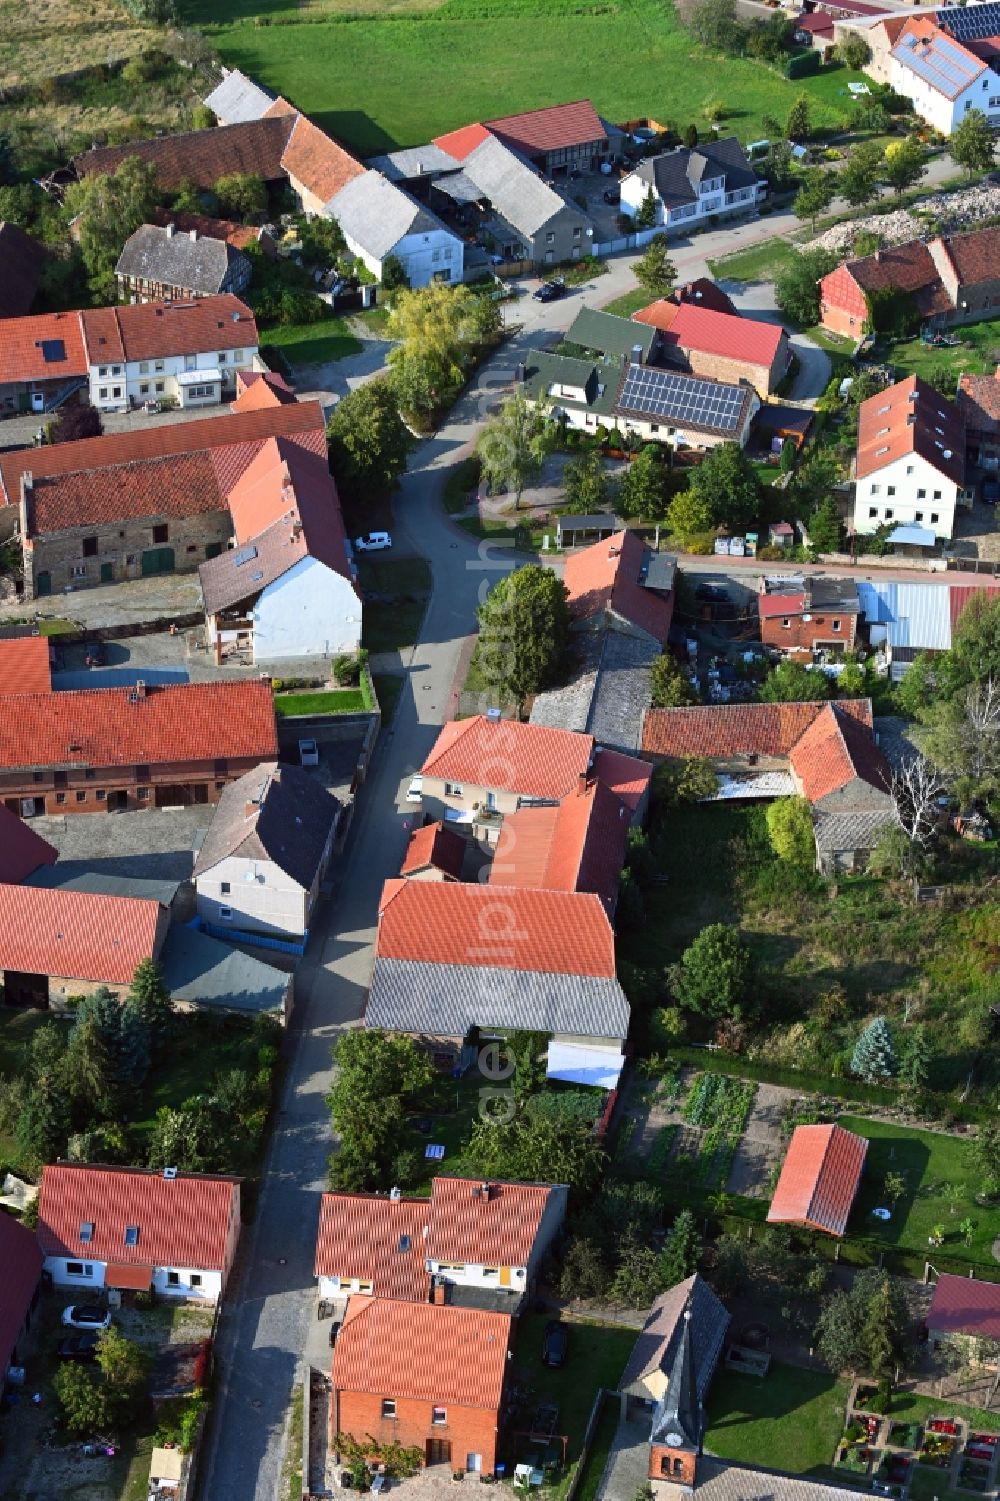 Aerial photograph Klinze - Village view in Klinze in the state Saxony-Anhalt, Germany